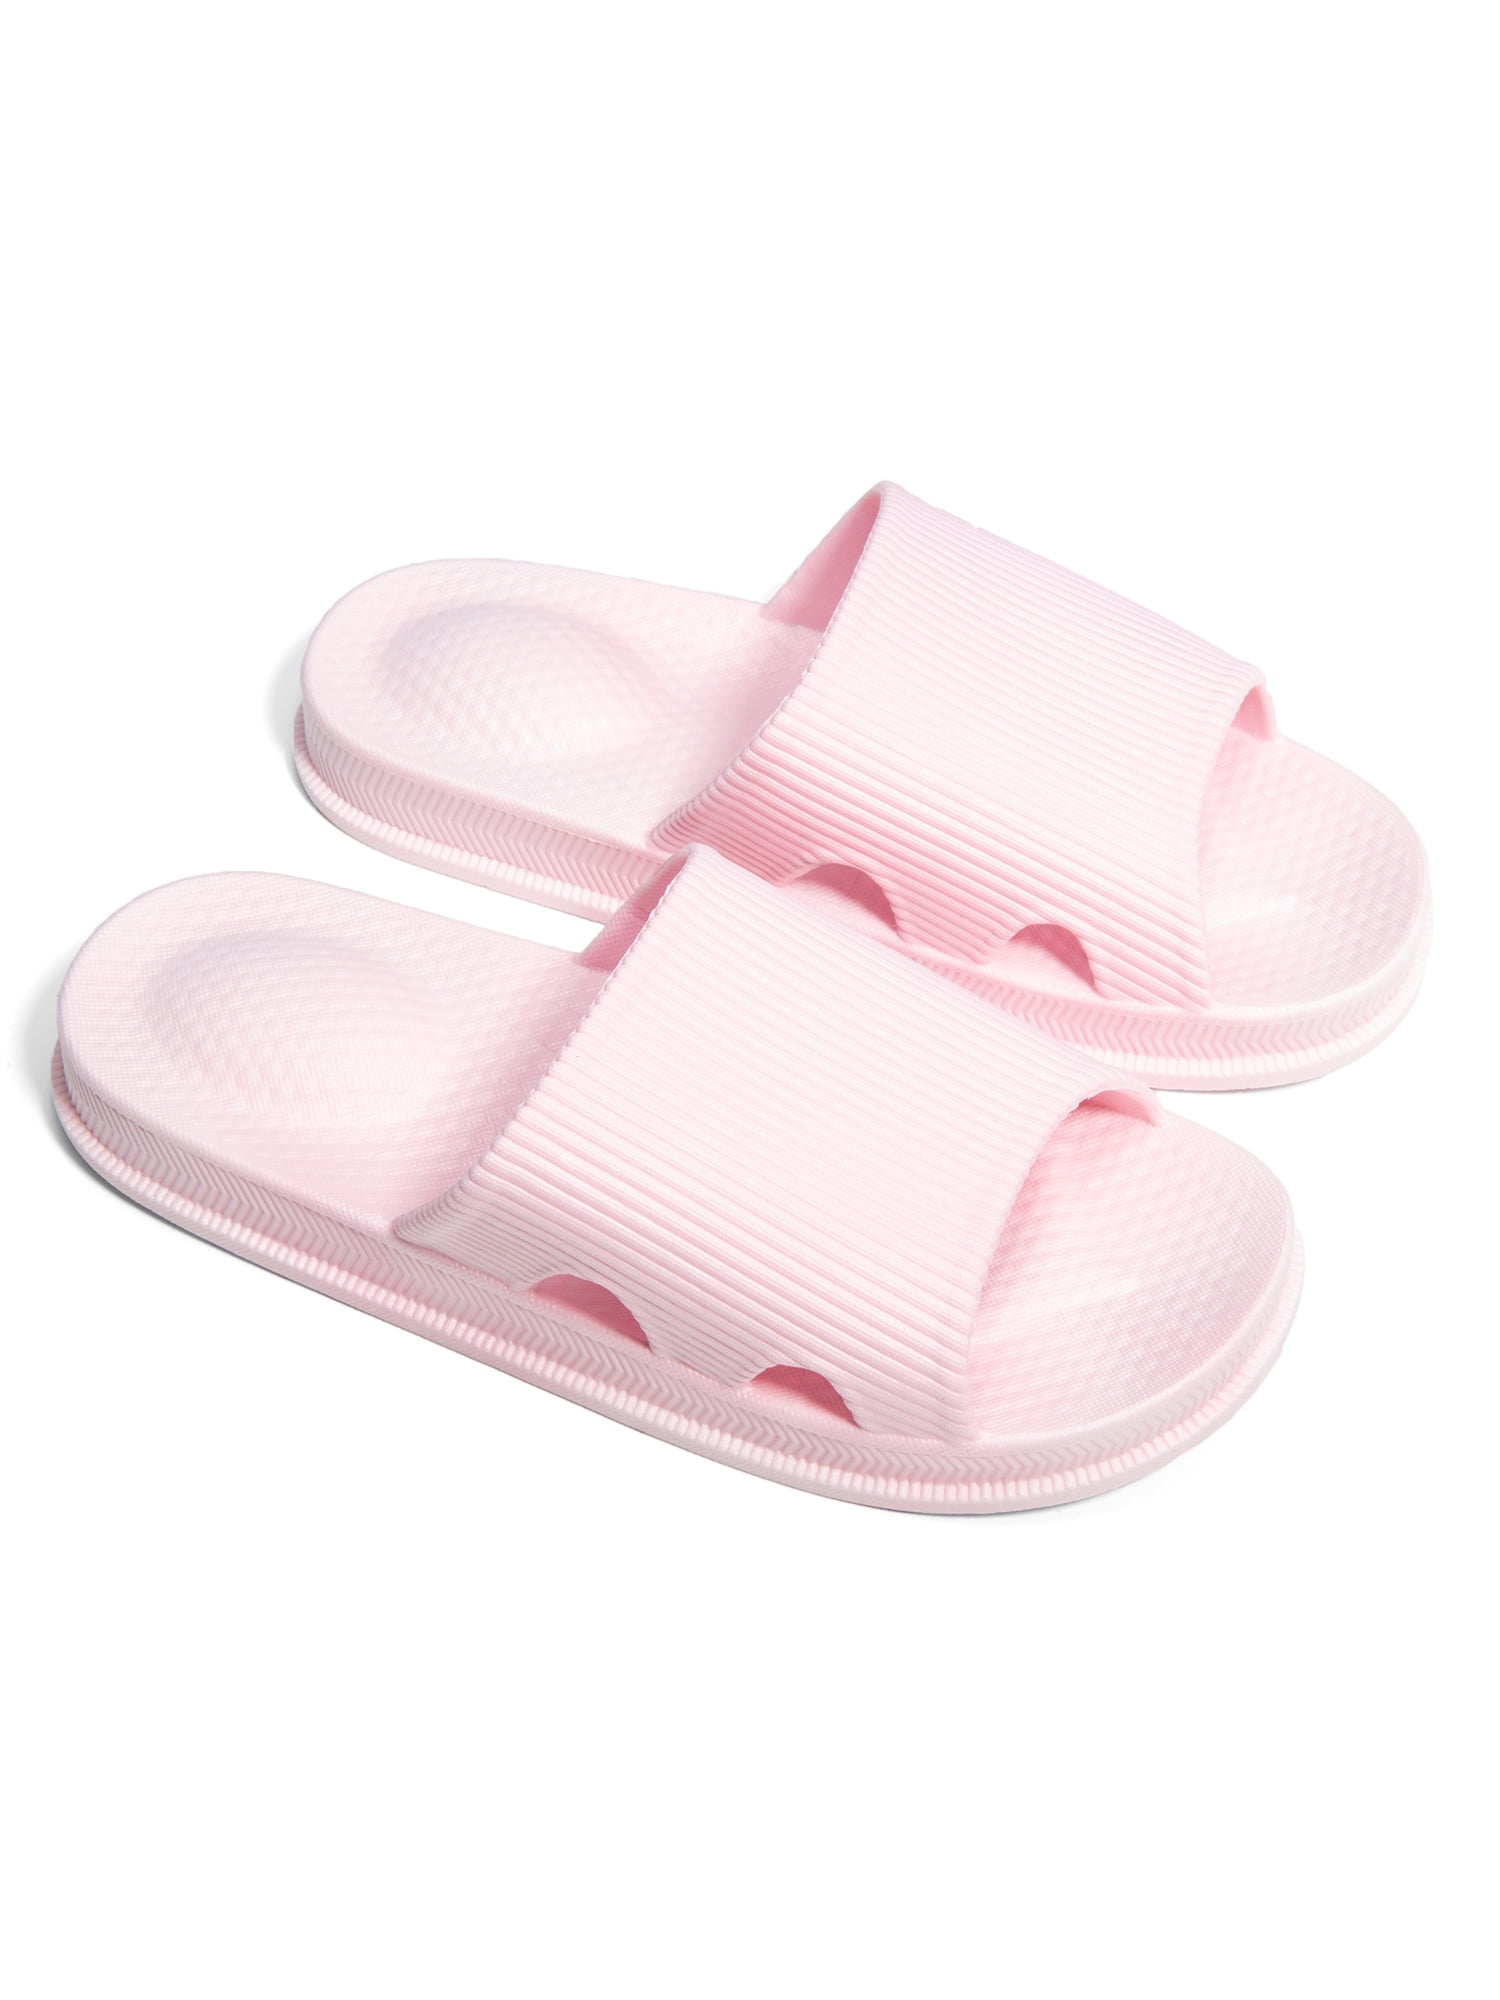 anti slip slippers for bathroom